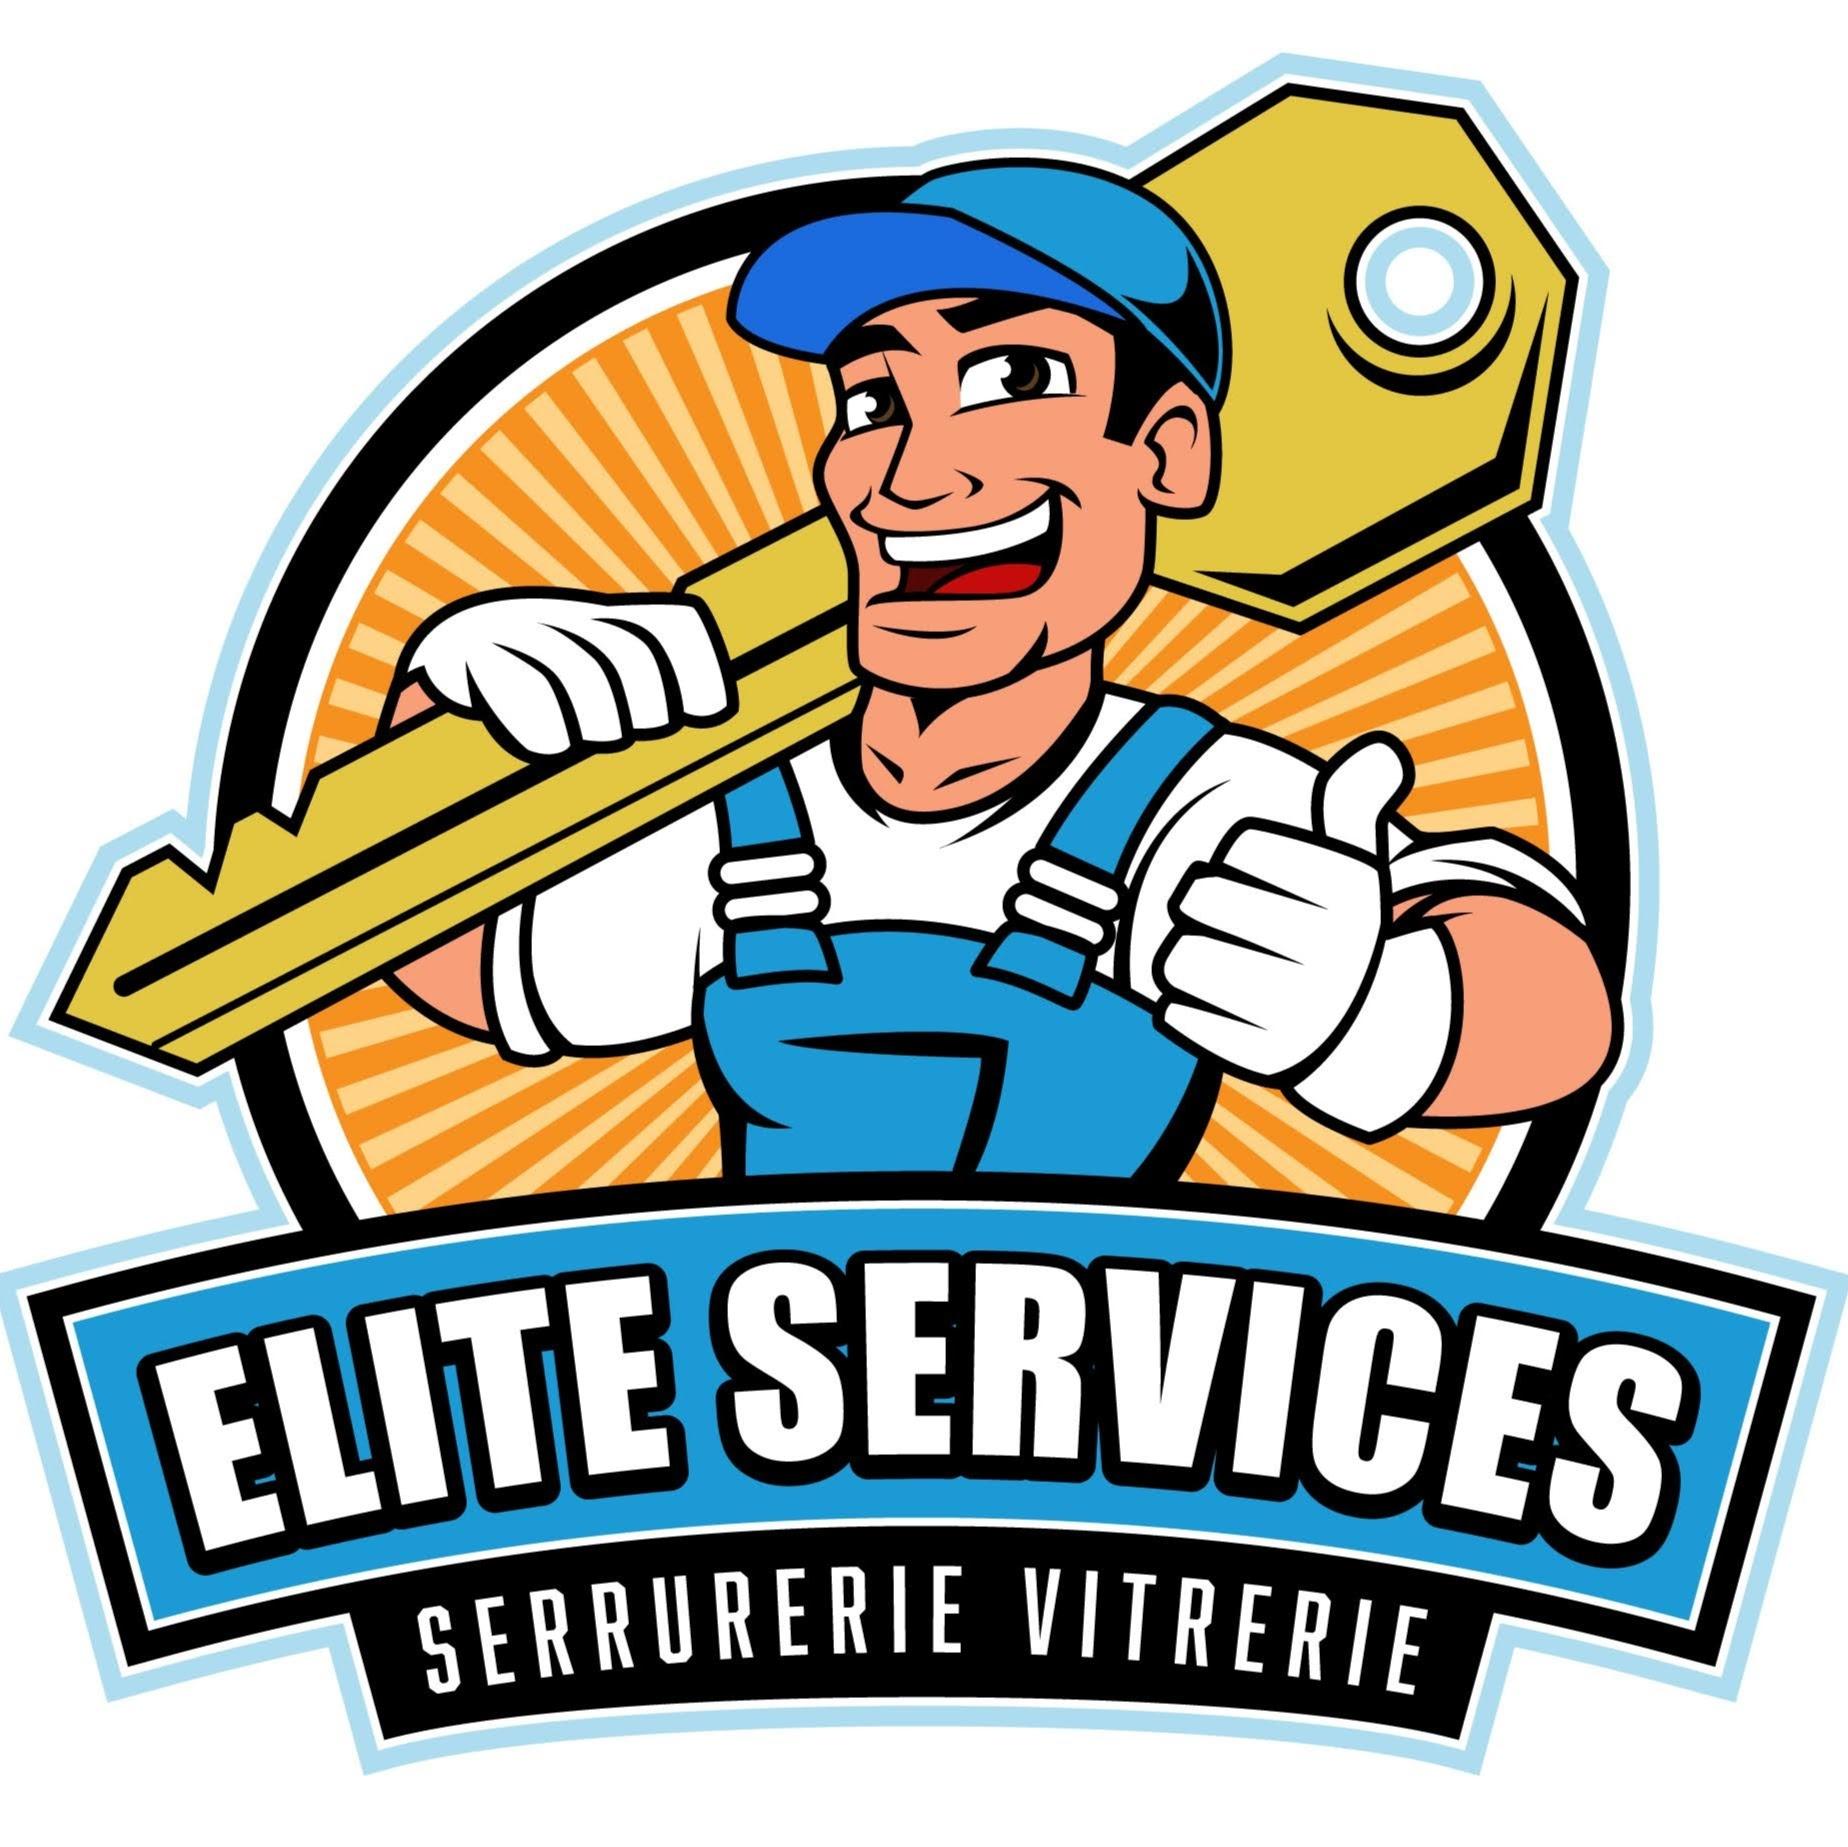 Elite Services - Serrurier Et Vitrier  Levallois Perret